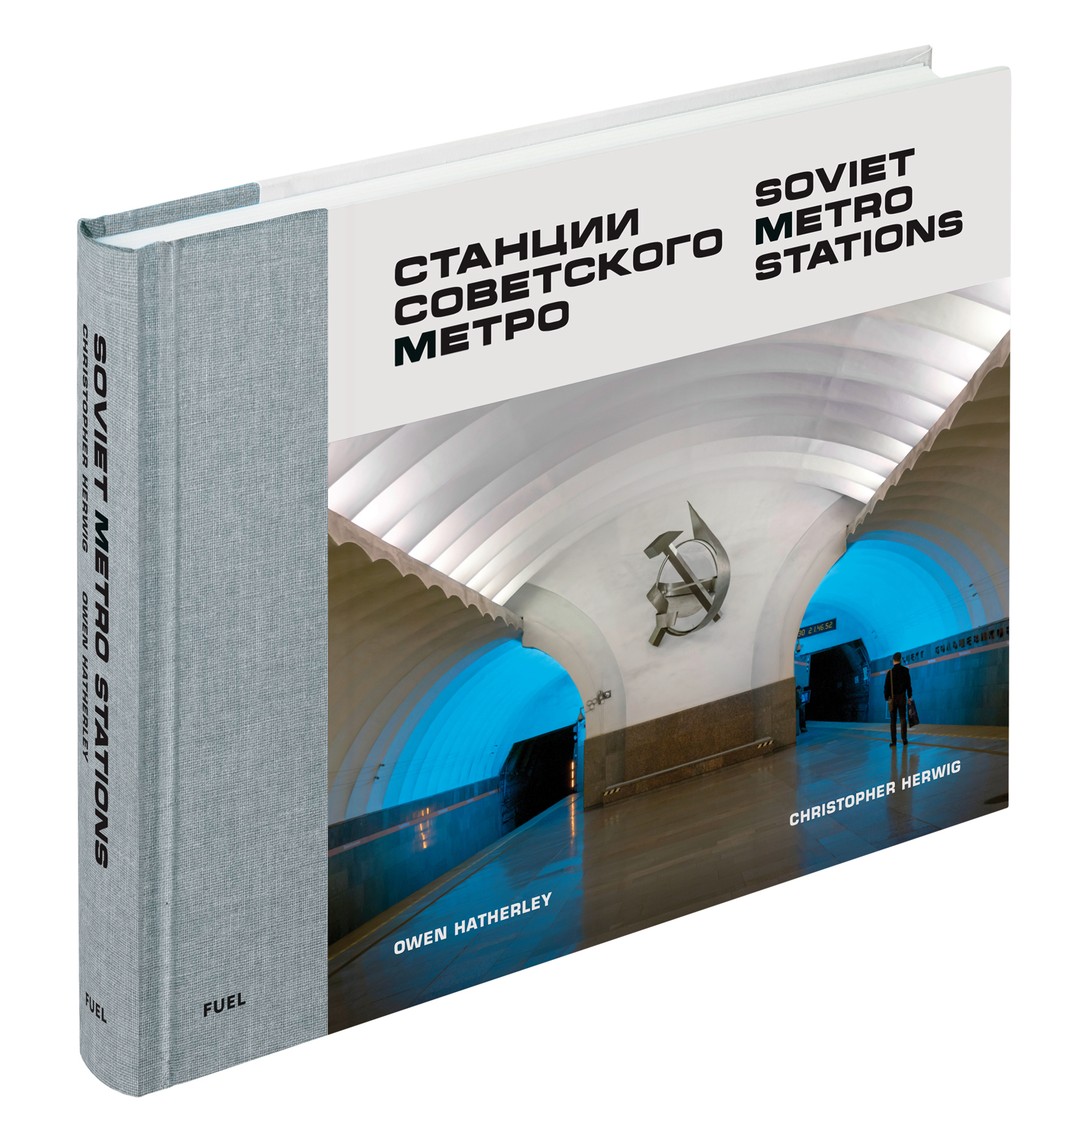 现货 Soviet Metro Stations 进口艺术 苏联地铁站摄影作品集 俄罗斯公共建筑艺术 苏联设计 FUEL